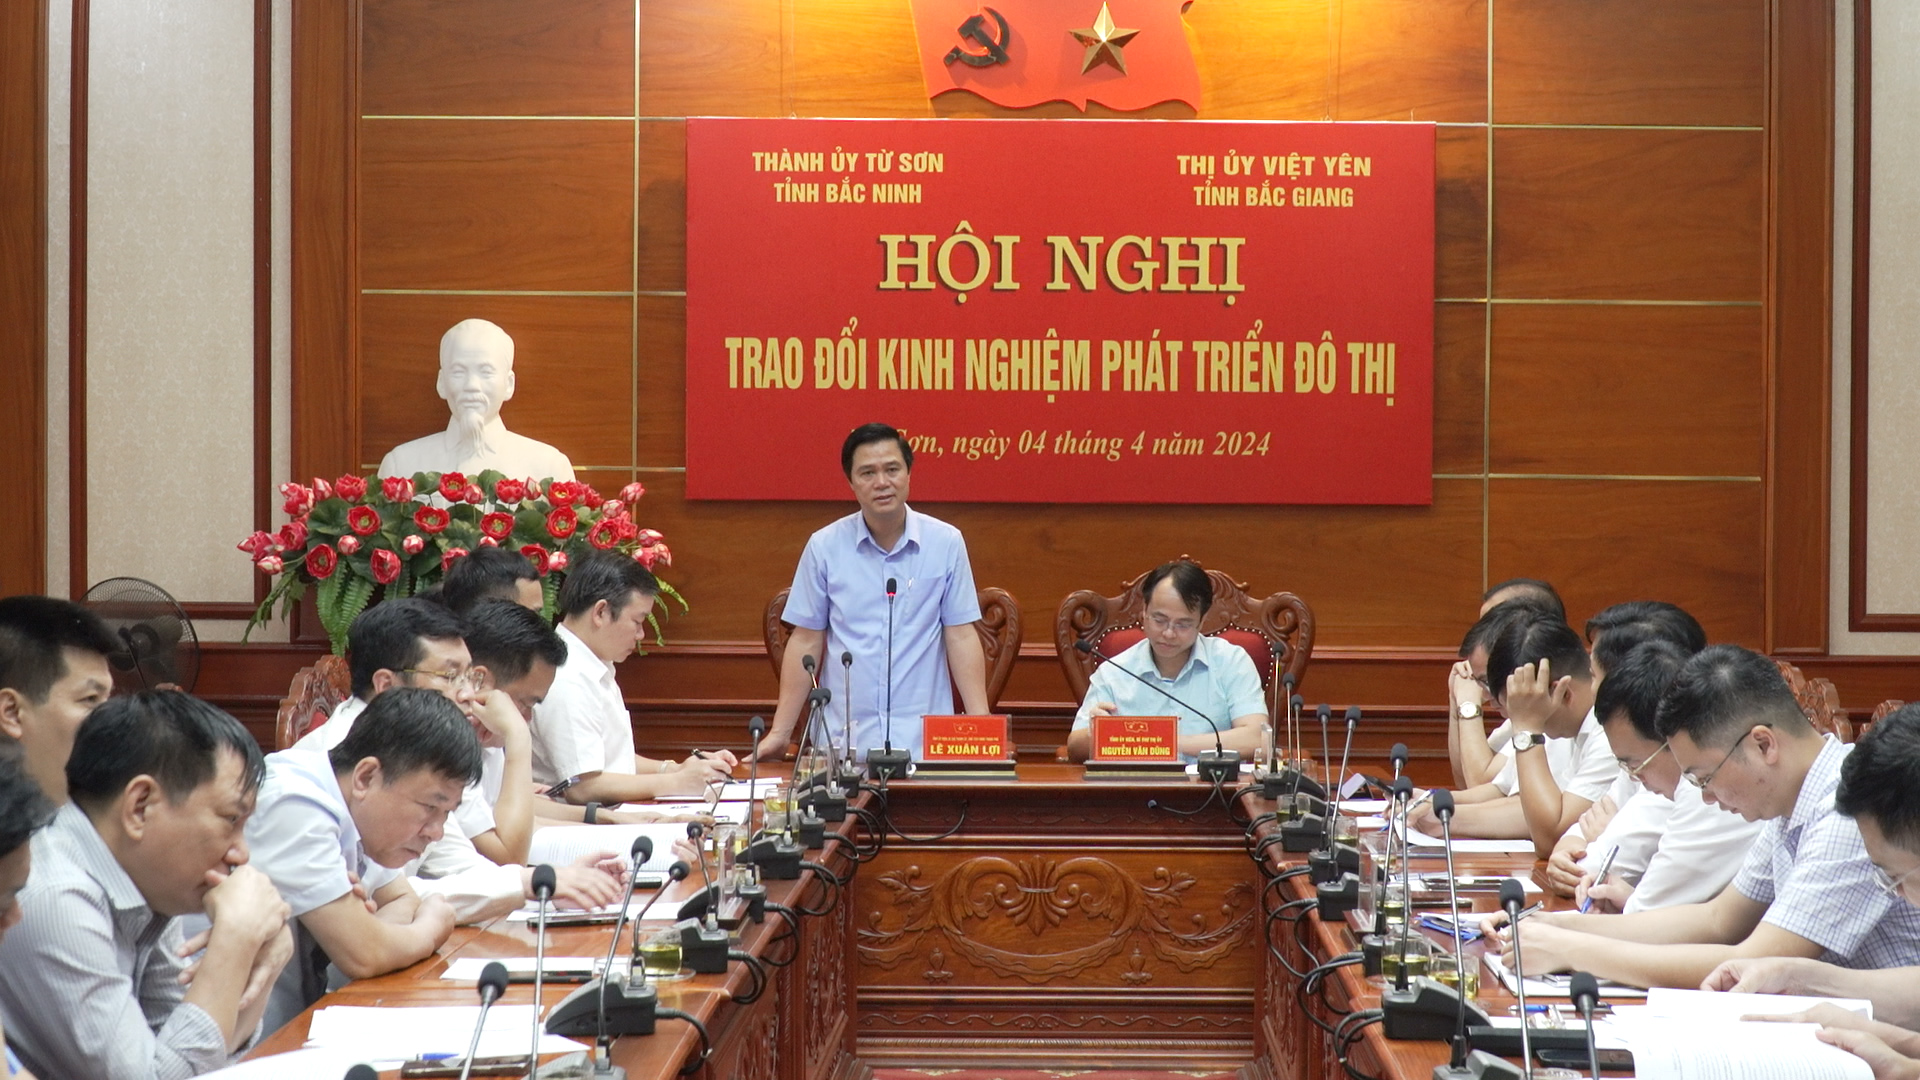 Hội nghị trao đổi kinh nghiệm phát triển đô thị giữa Thành ủy Từ Sơn với Thị ủy Việt Yên tỉnh Bắc Giang